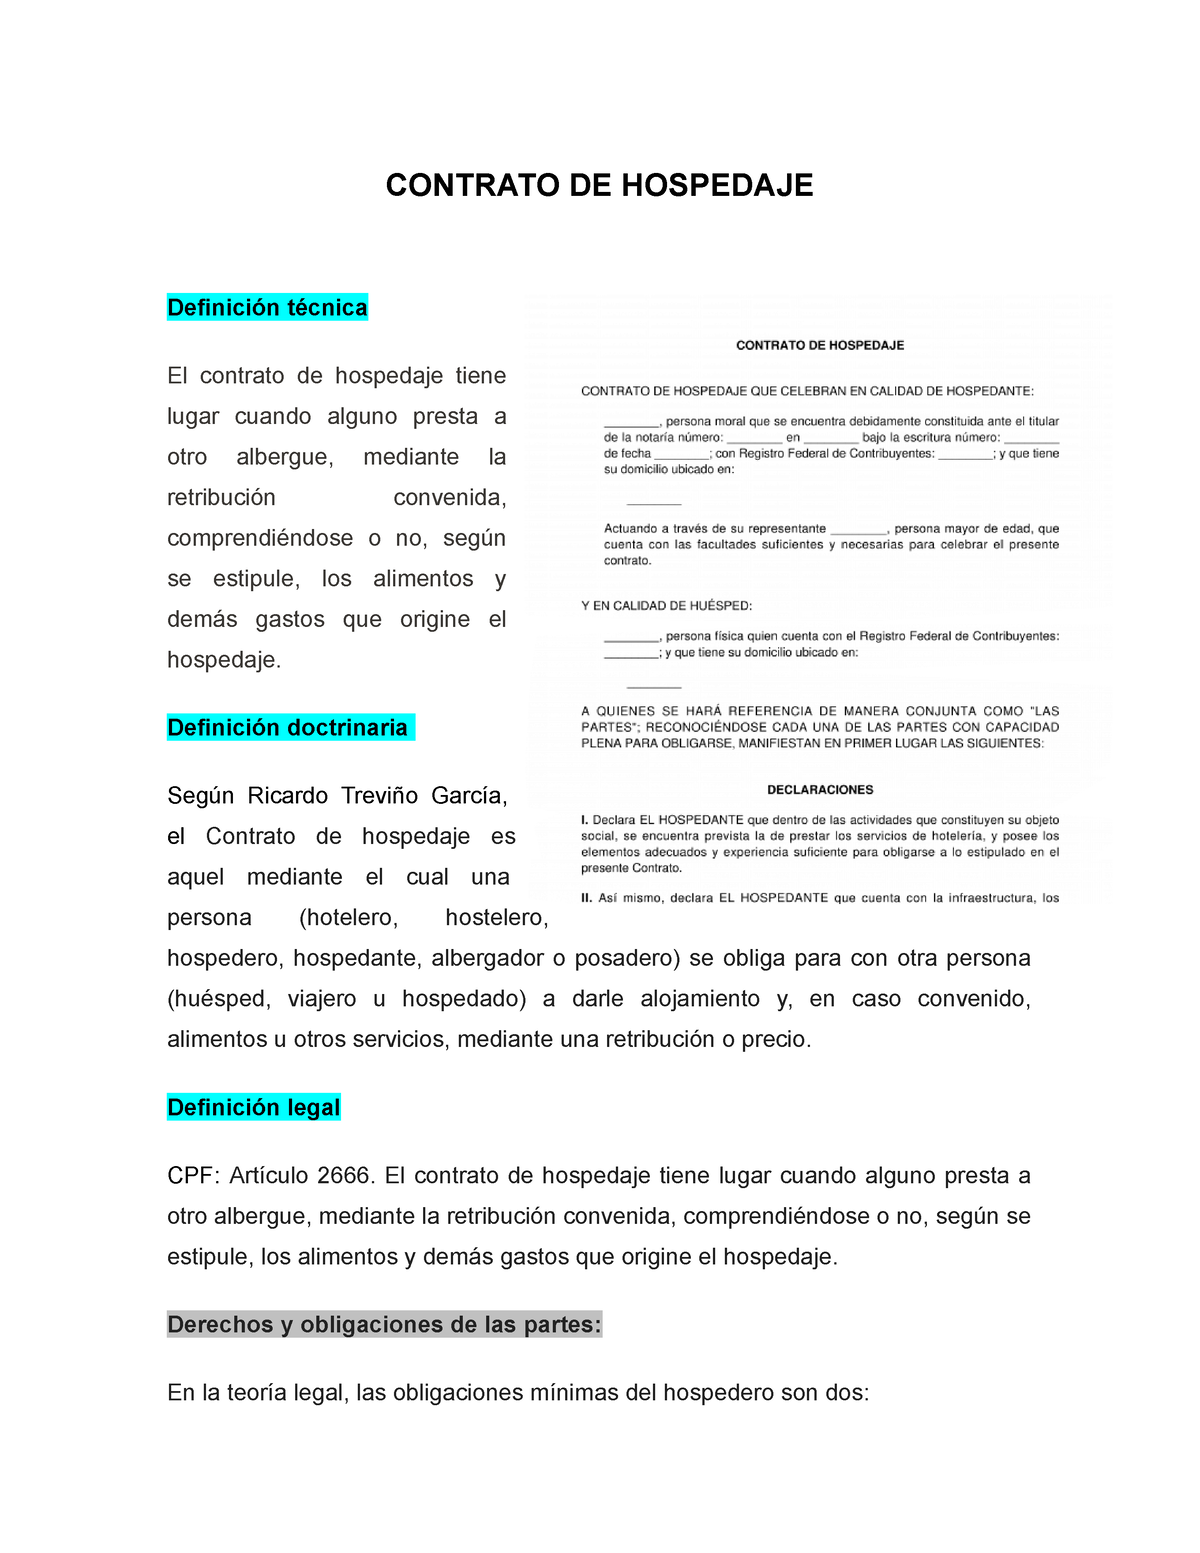 Contrato De Hospedaje Contrato De Hospedaje Definición Técnica El Contrato De Hospedaje Tiene 3707